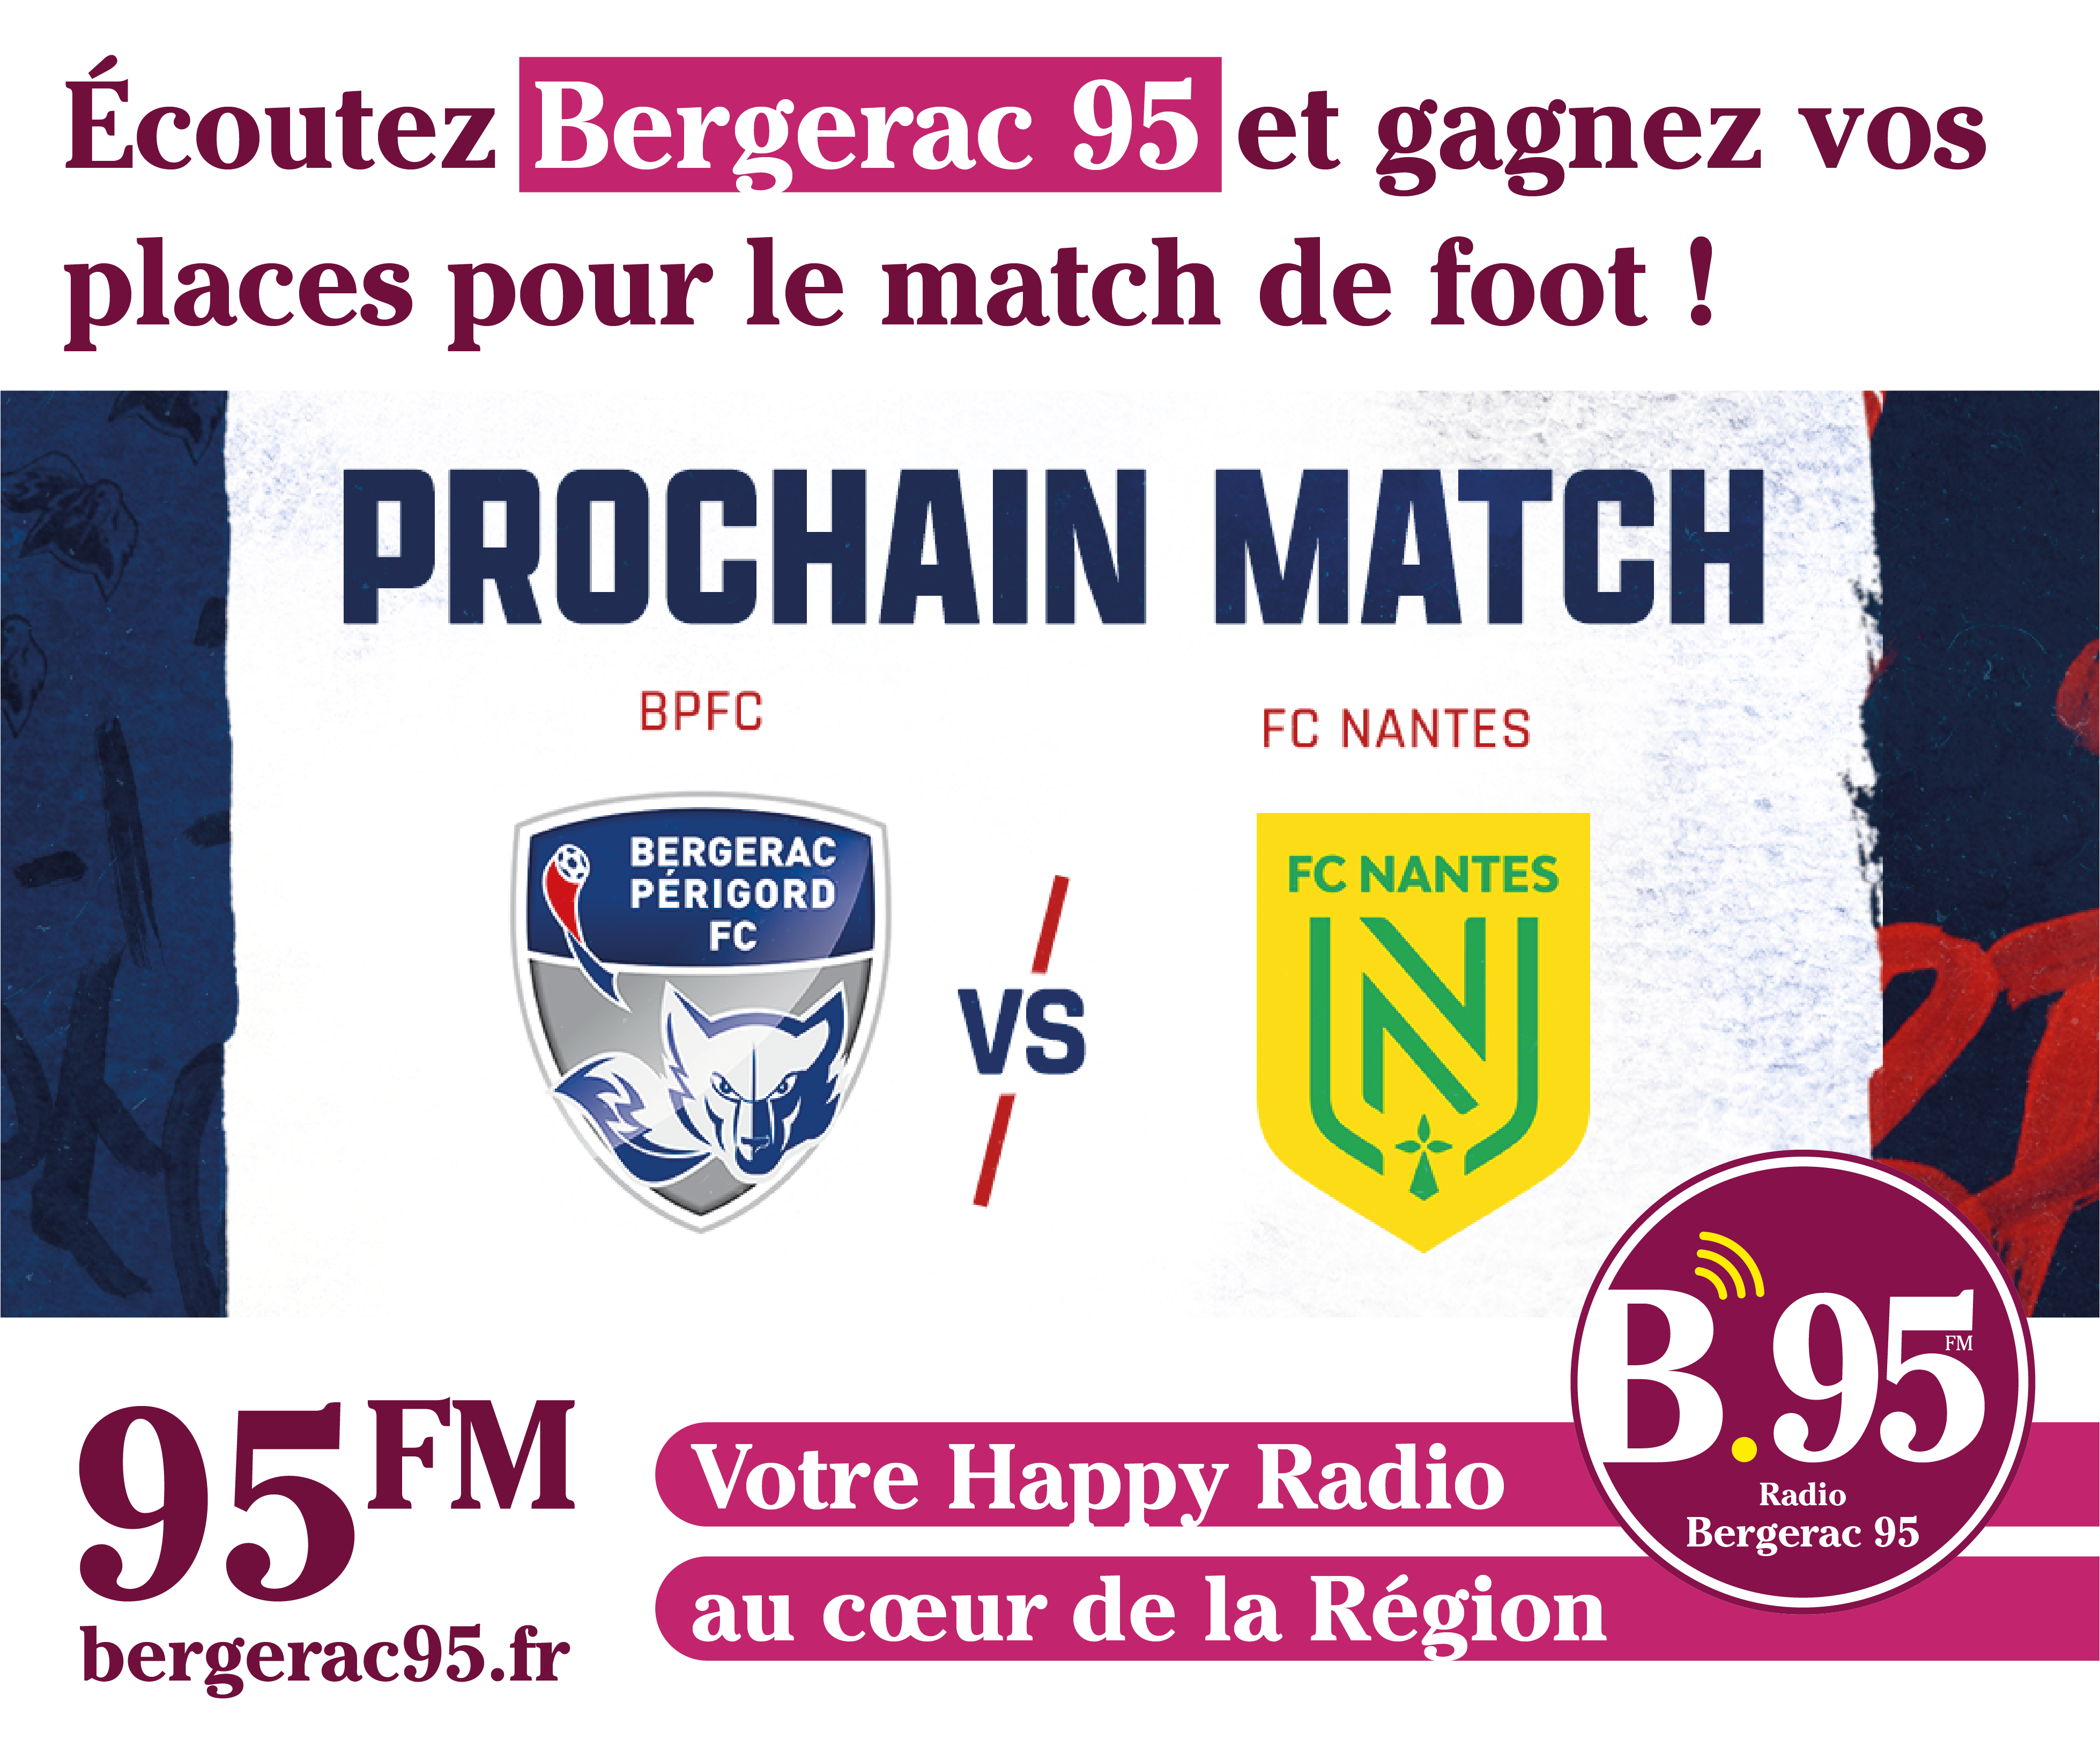 You are currently viewing Écoutez Bergerac 95 et gagnez vos places pour le match de foot !